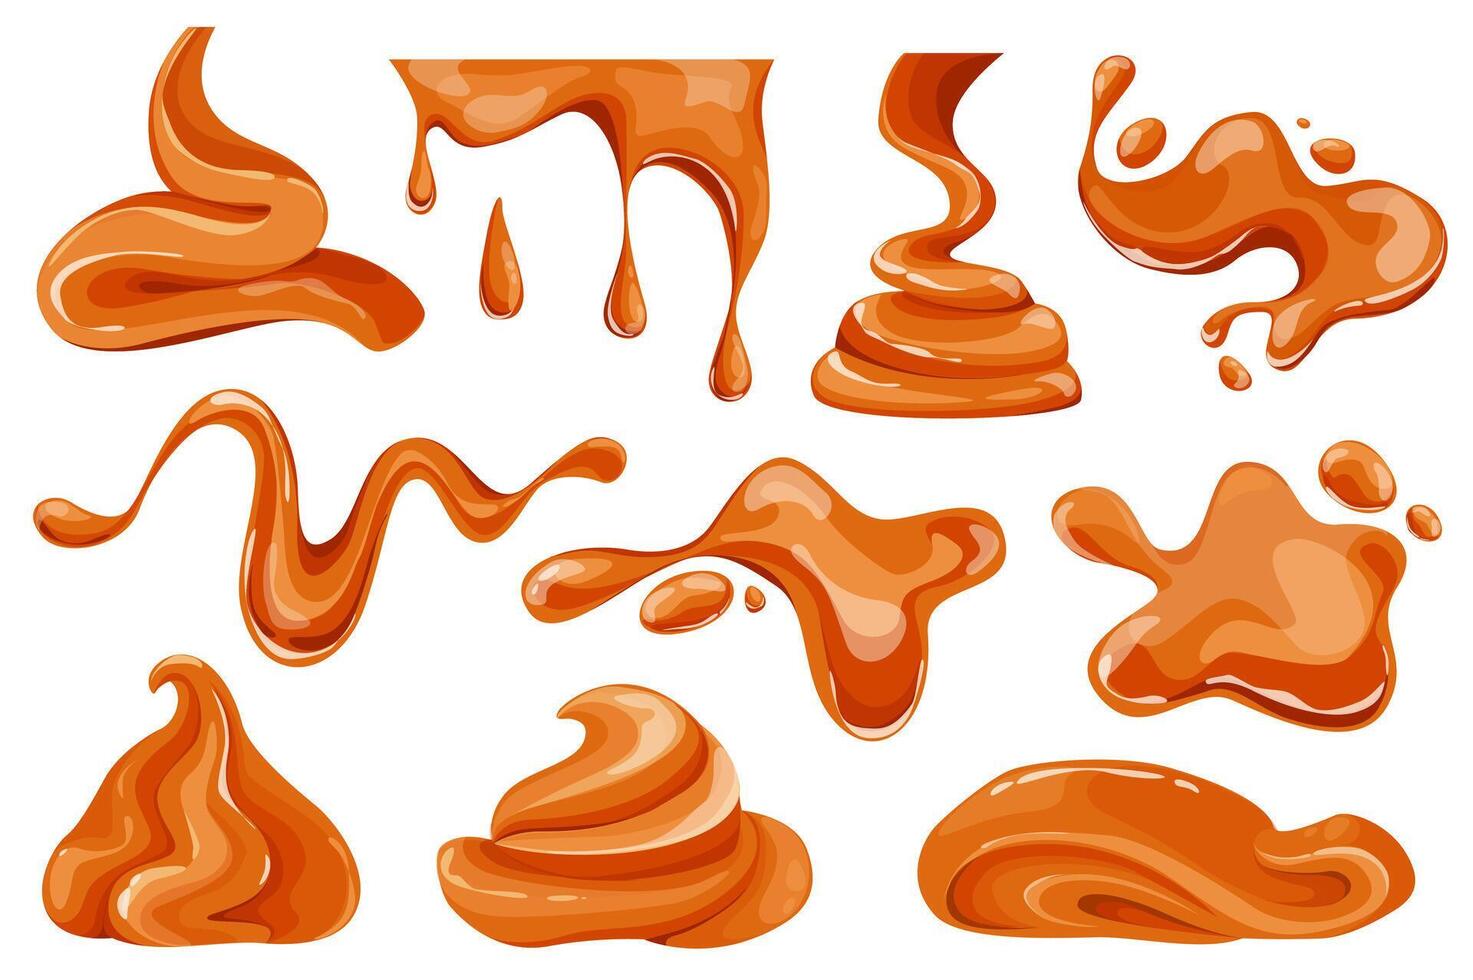 gesmolten karamel reeks grafisch elementen in vlak ontwerp. bundel van karamel vloeiende en druipend, vloeistof toffee snoepjes met plons en druppel, banketbakkerij topping. vector illustratie geïsoleerd voorwerpen